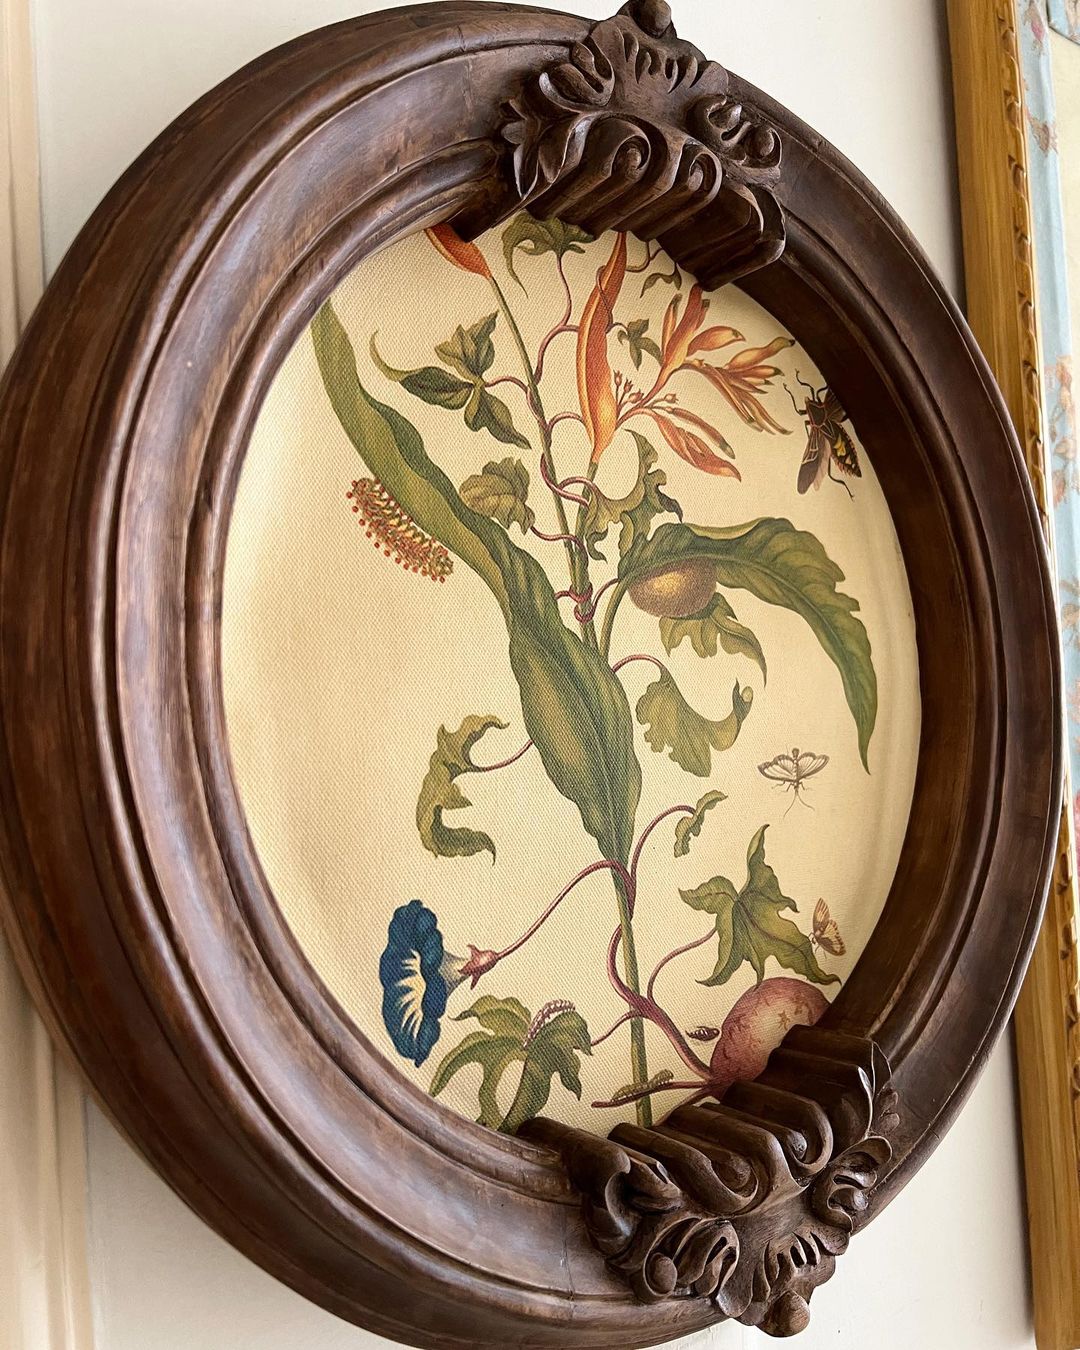 Circular frame with foliage cartouche